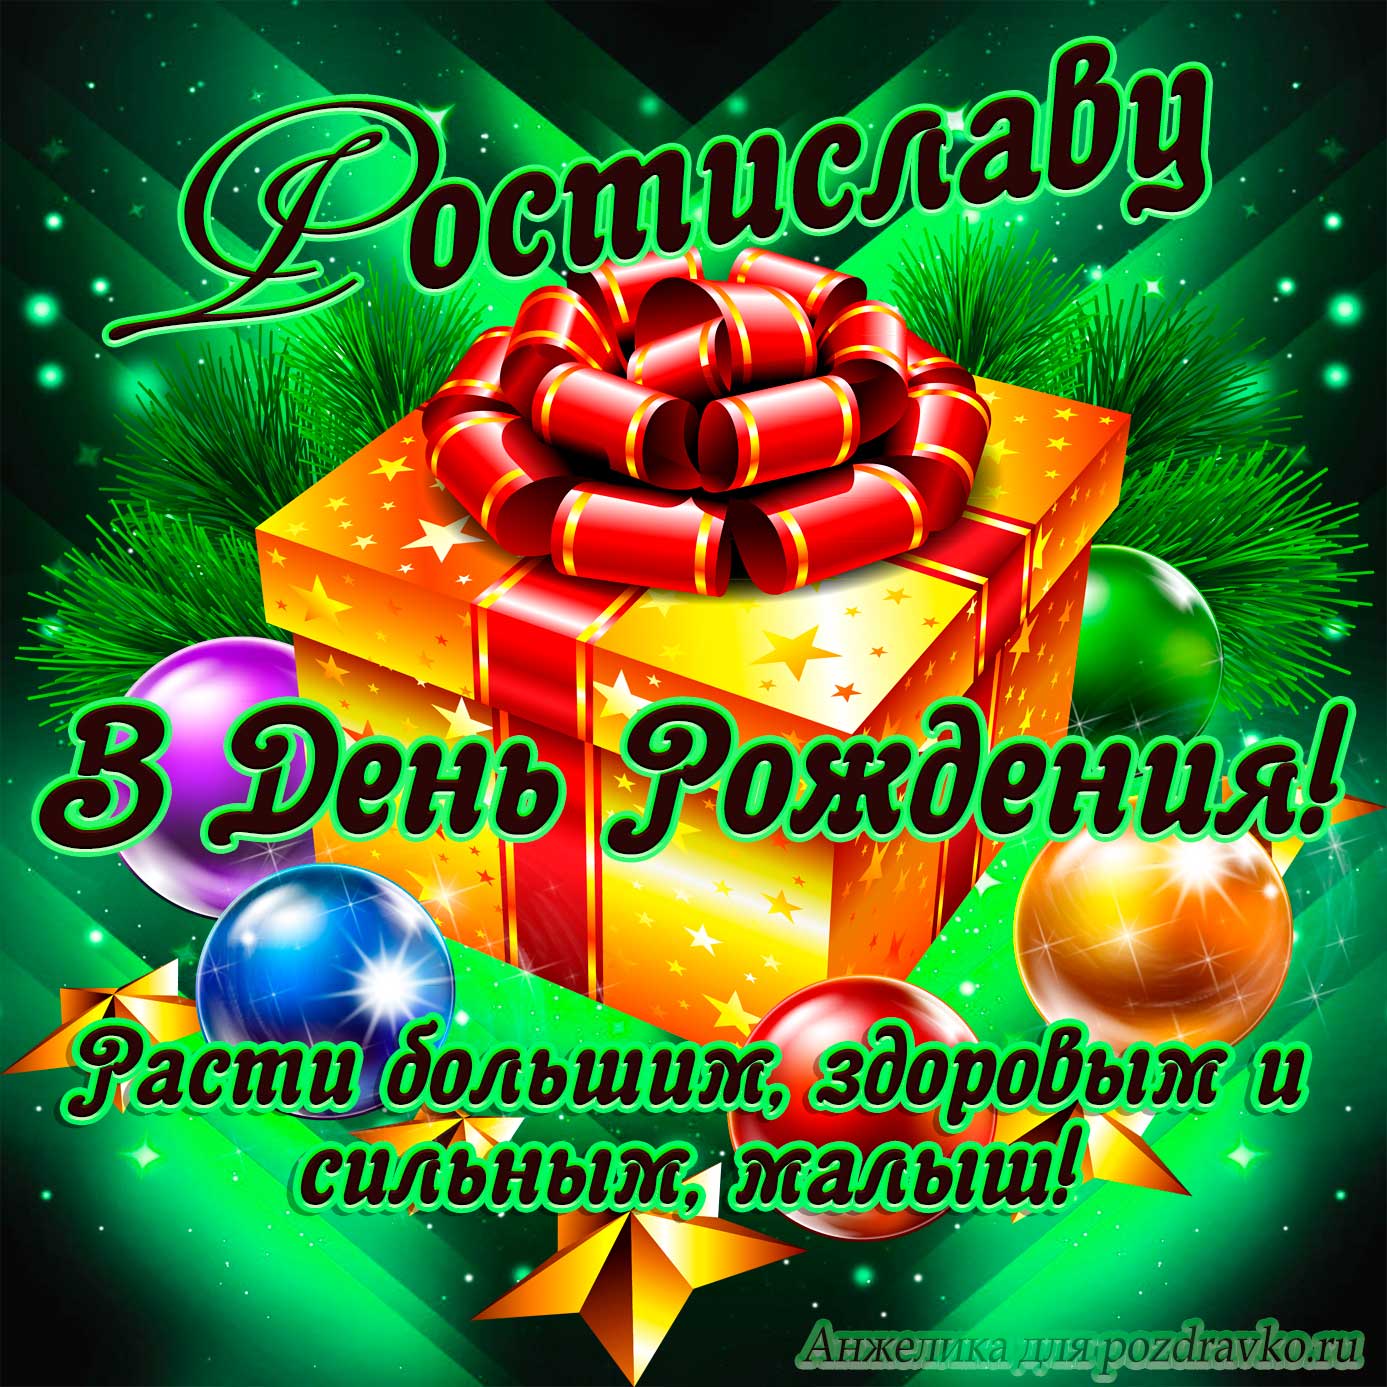 Открытка - Ростиславу в День Рождения, расти большим здоровым и сильным. Скачать бесплатно или отправить картинку.